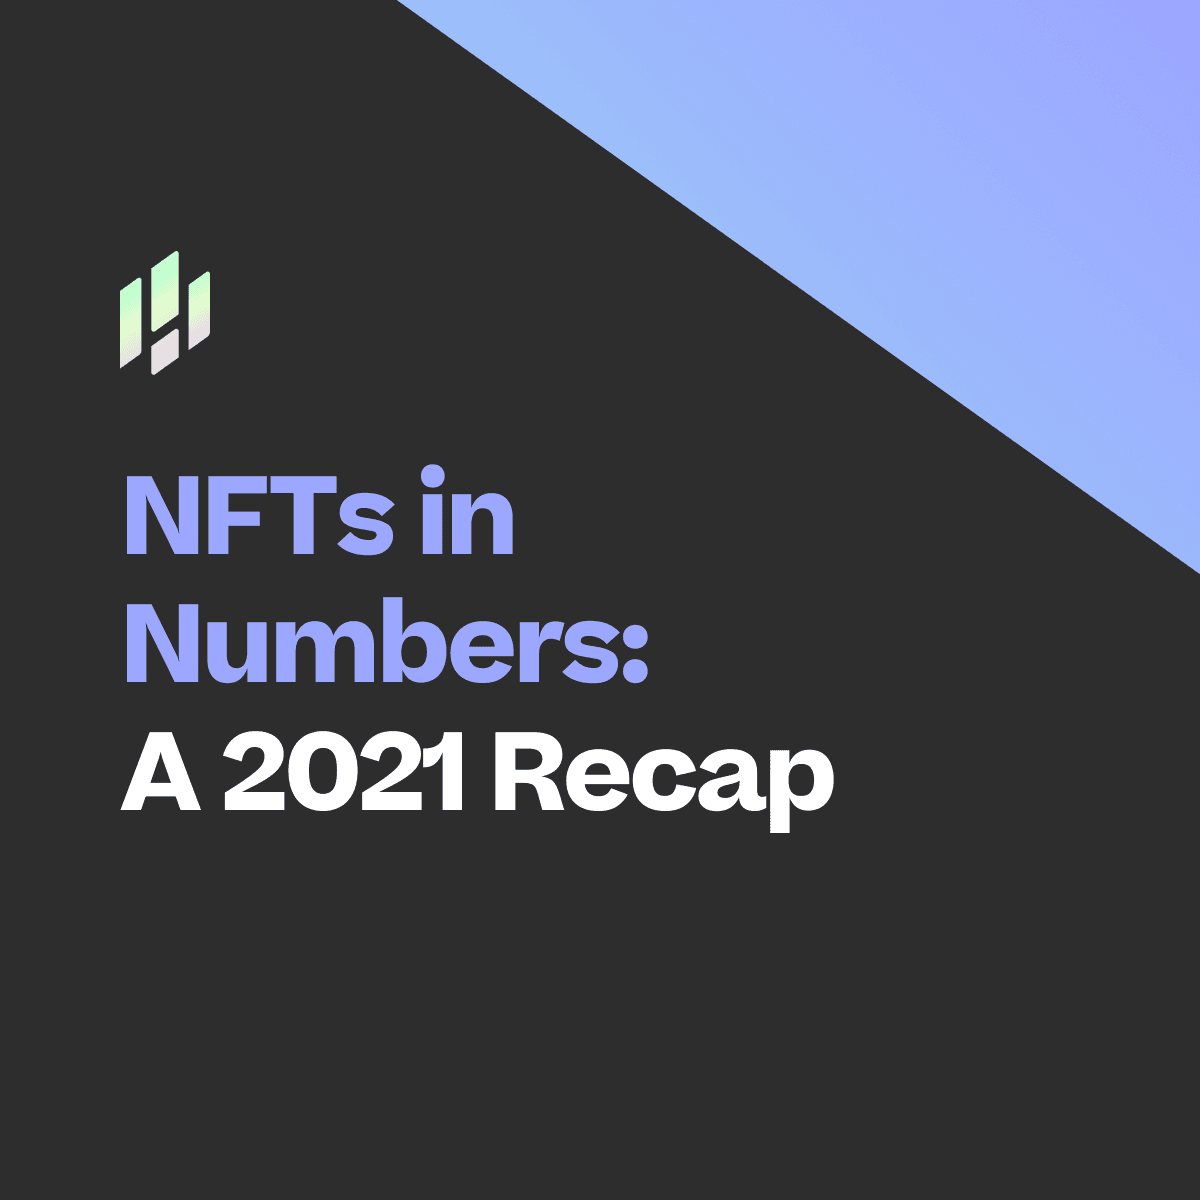 NFTs in Numbers: A 2021 Recap